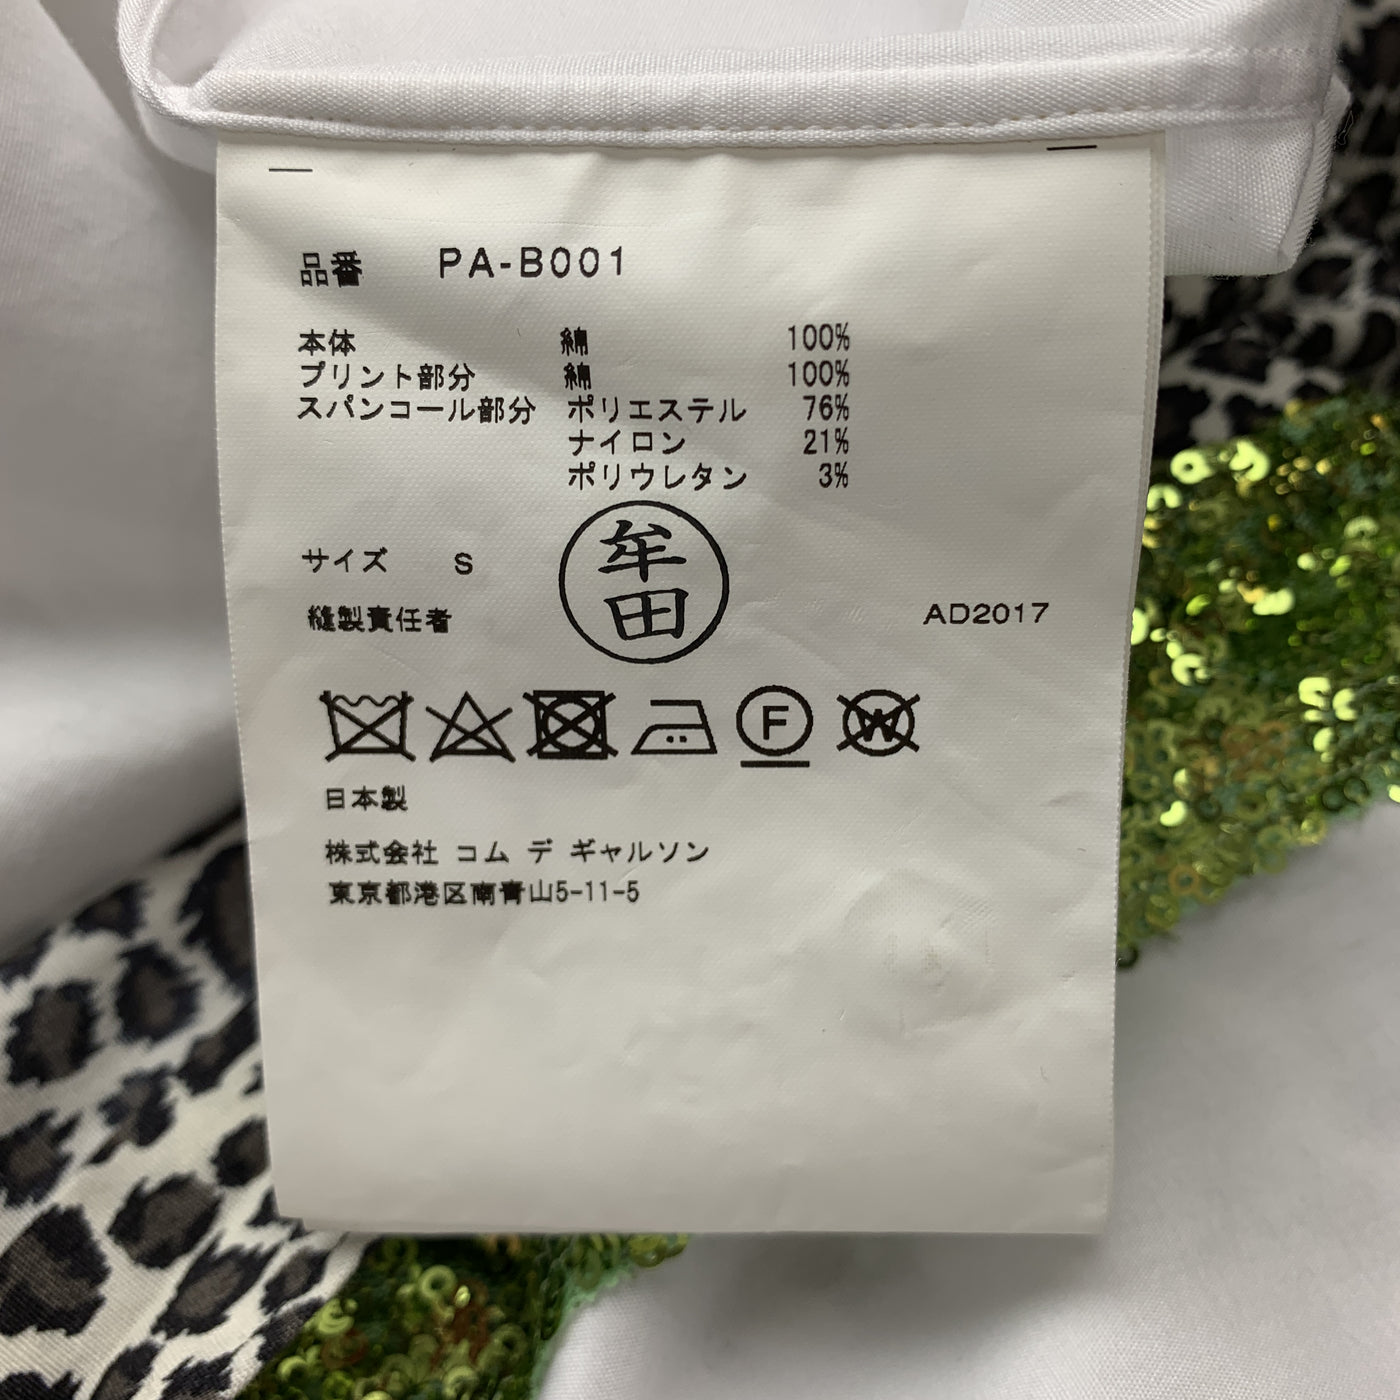 COMME des GARCONS HOMME PLUS Size S White Cotton Leopard & Green Sequin Stripe Shirt